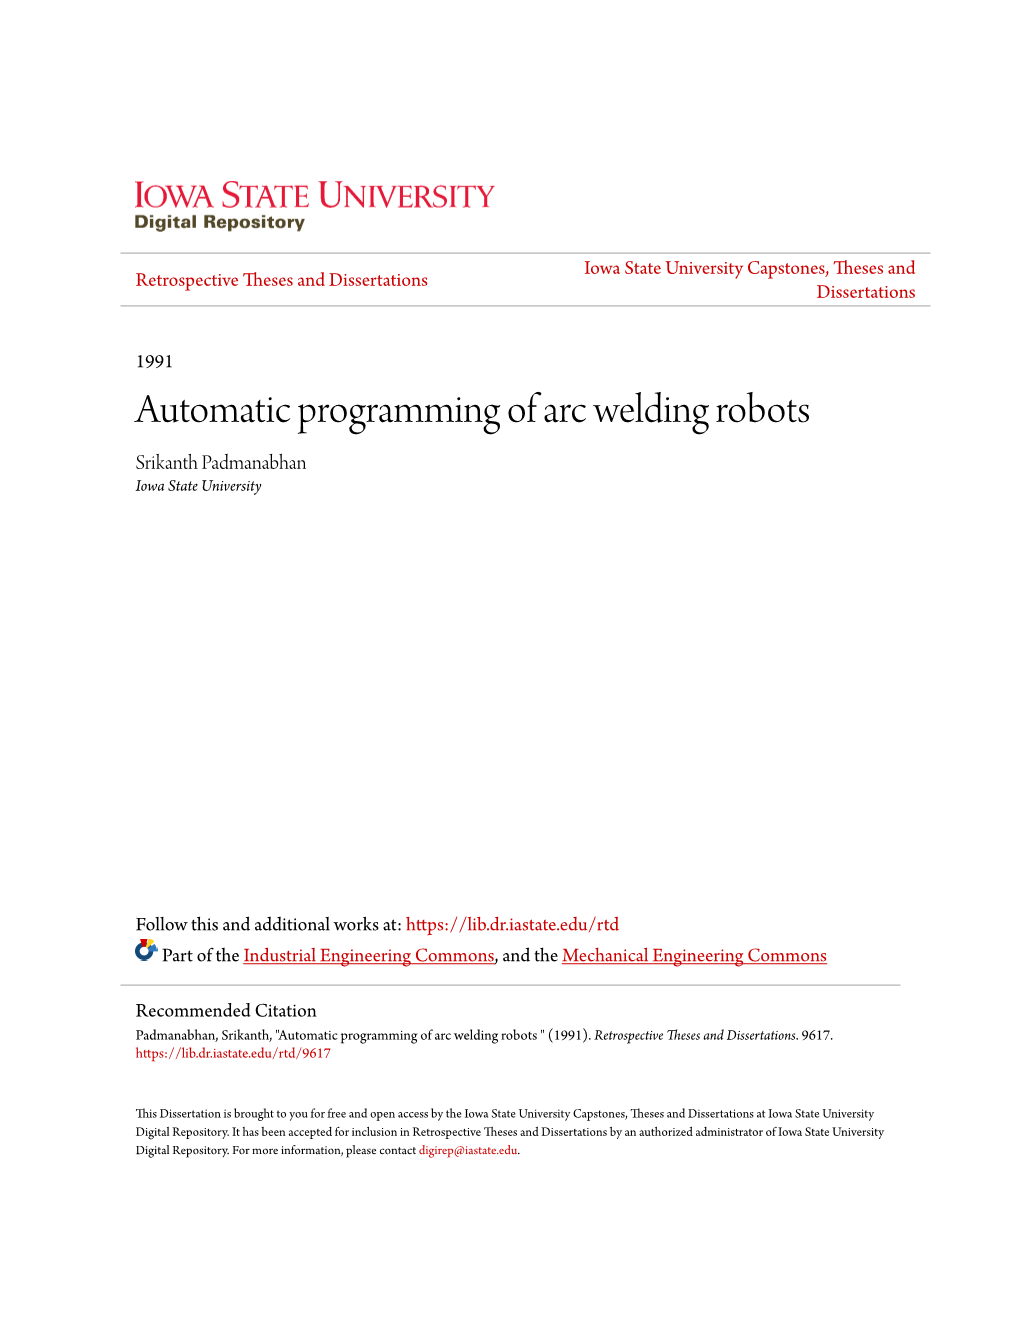 Automatic Programming of Arc Welding Robots Srikanth Padmanabhan Iowa State University